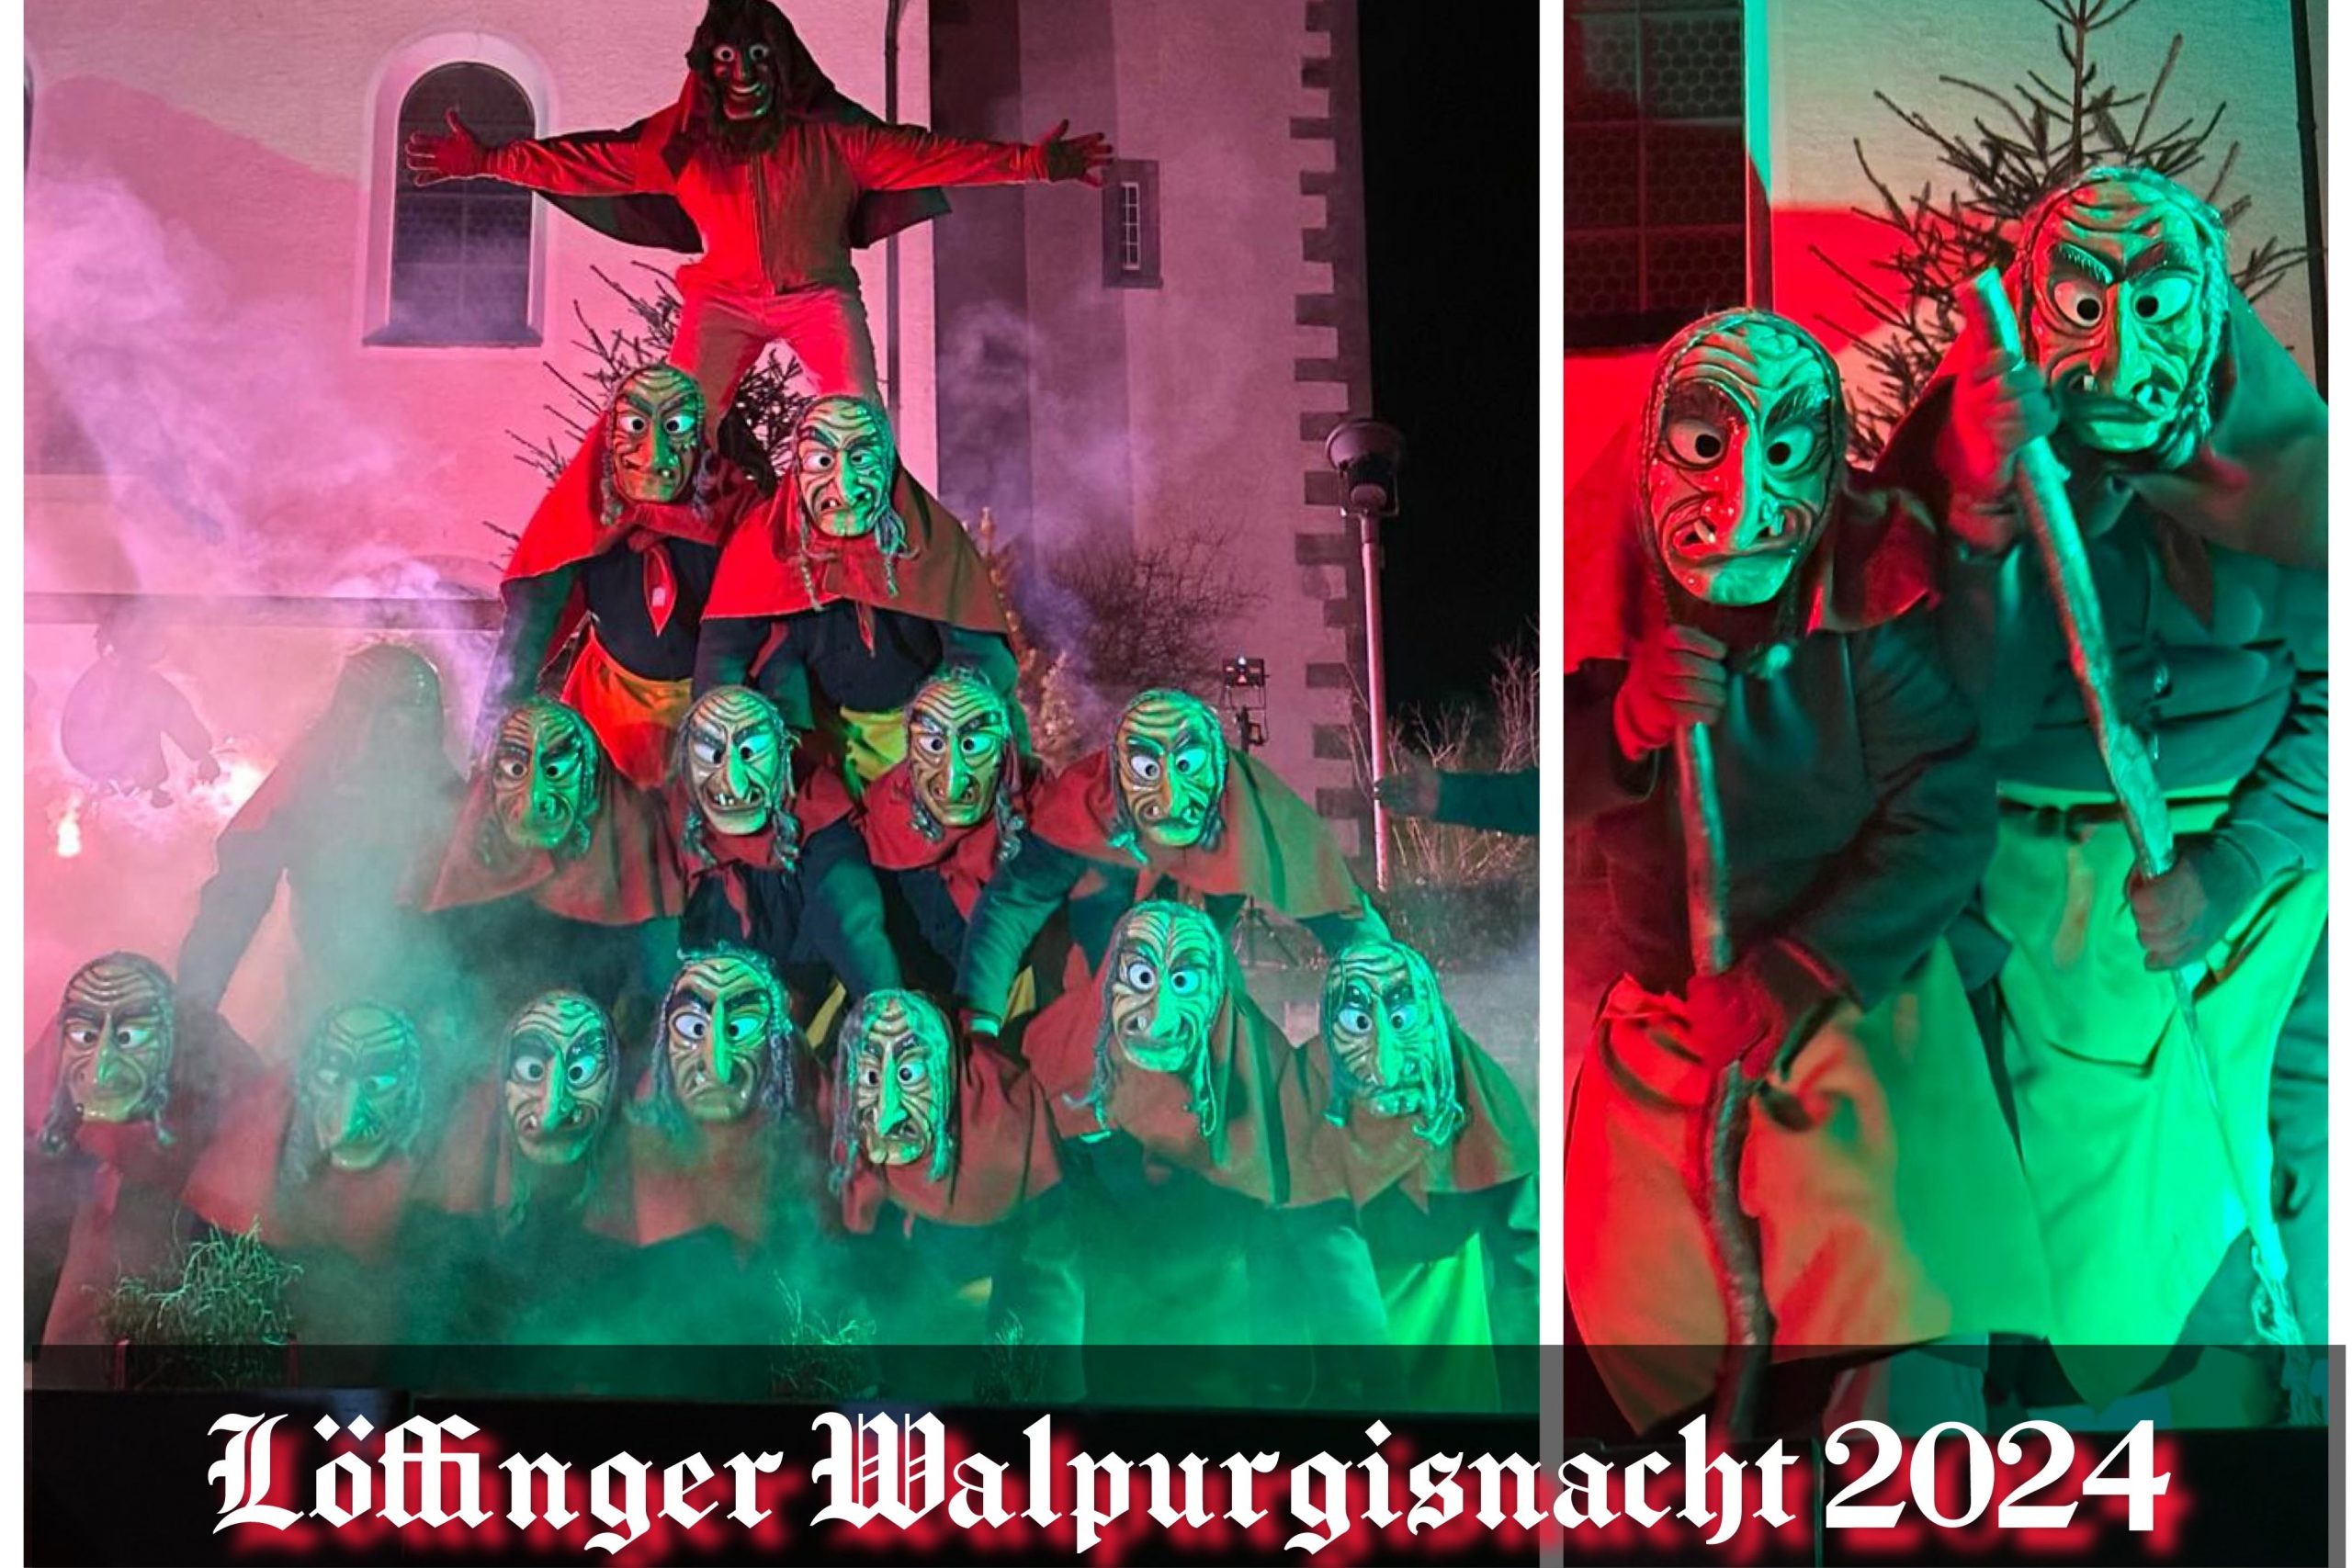 Ein grausig schönes Schauspiel - knapp 100 Jahre alt: Die Löffinger Walpurgisnacht